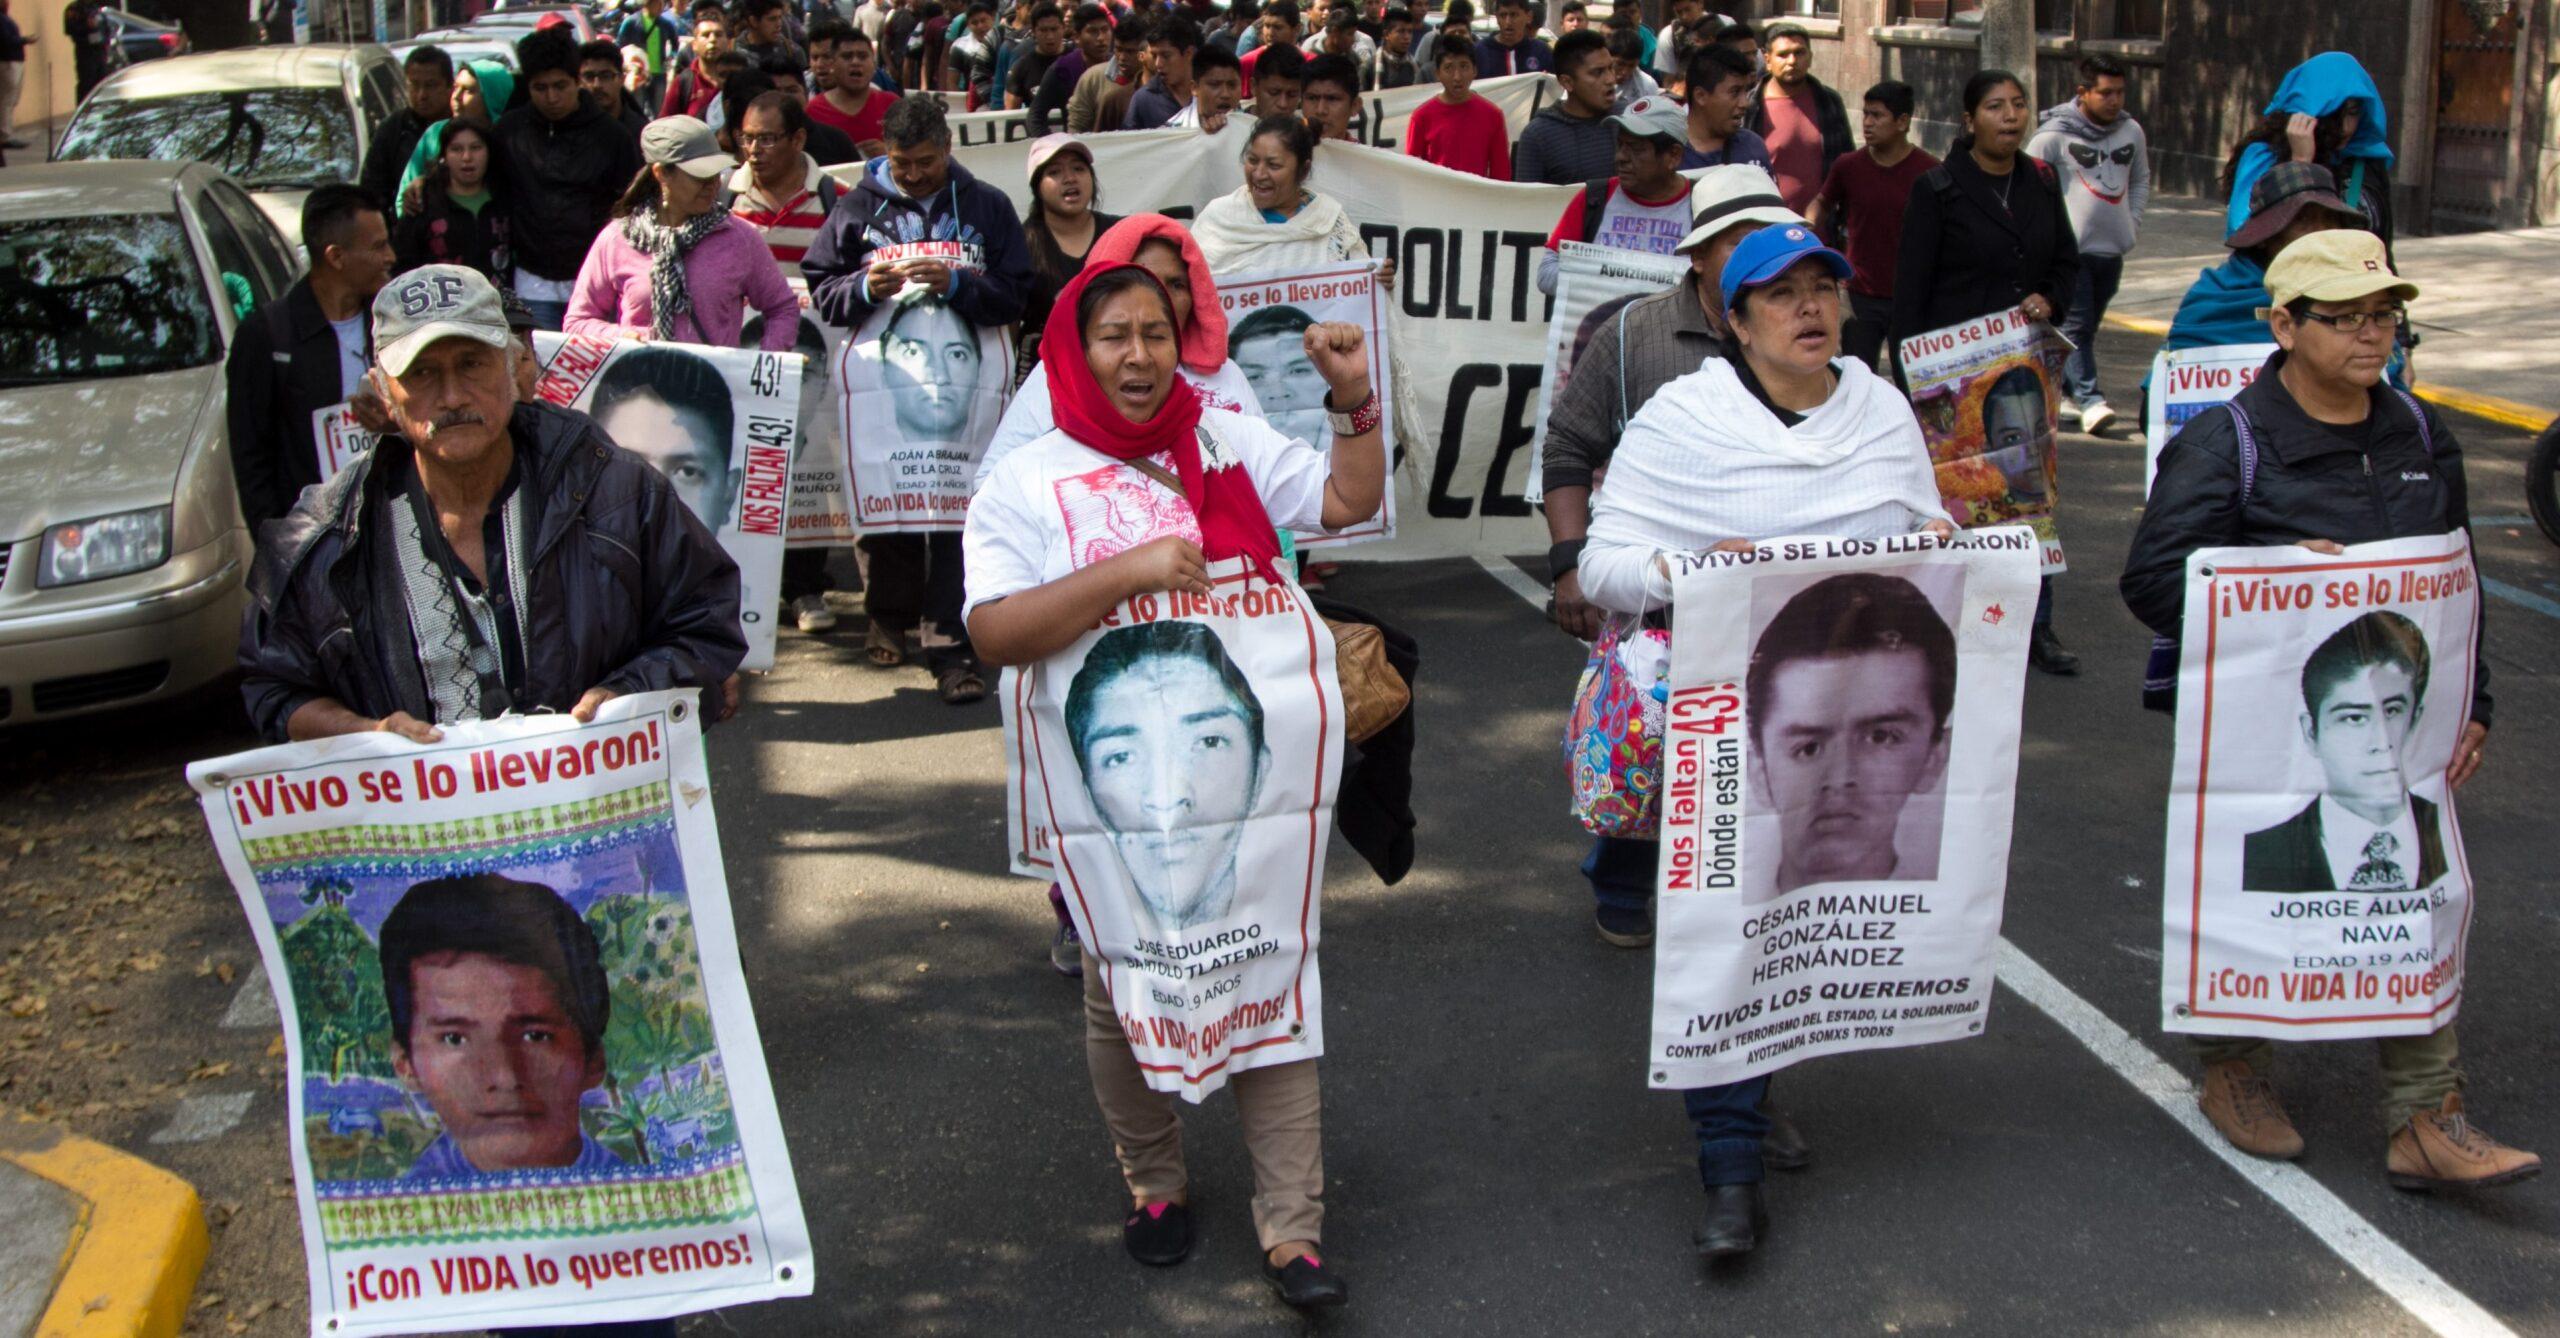 Caso Ayotzinapa: CNDH analizará fallo judicial y continuará con su investigación independiente